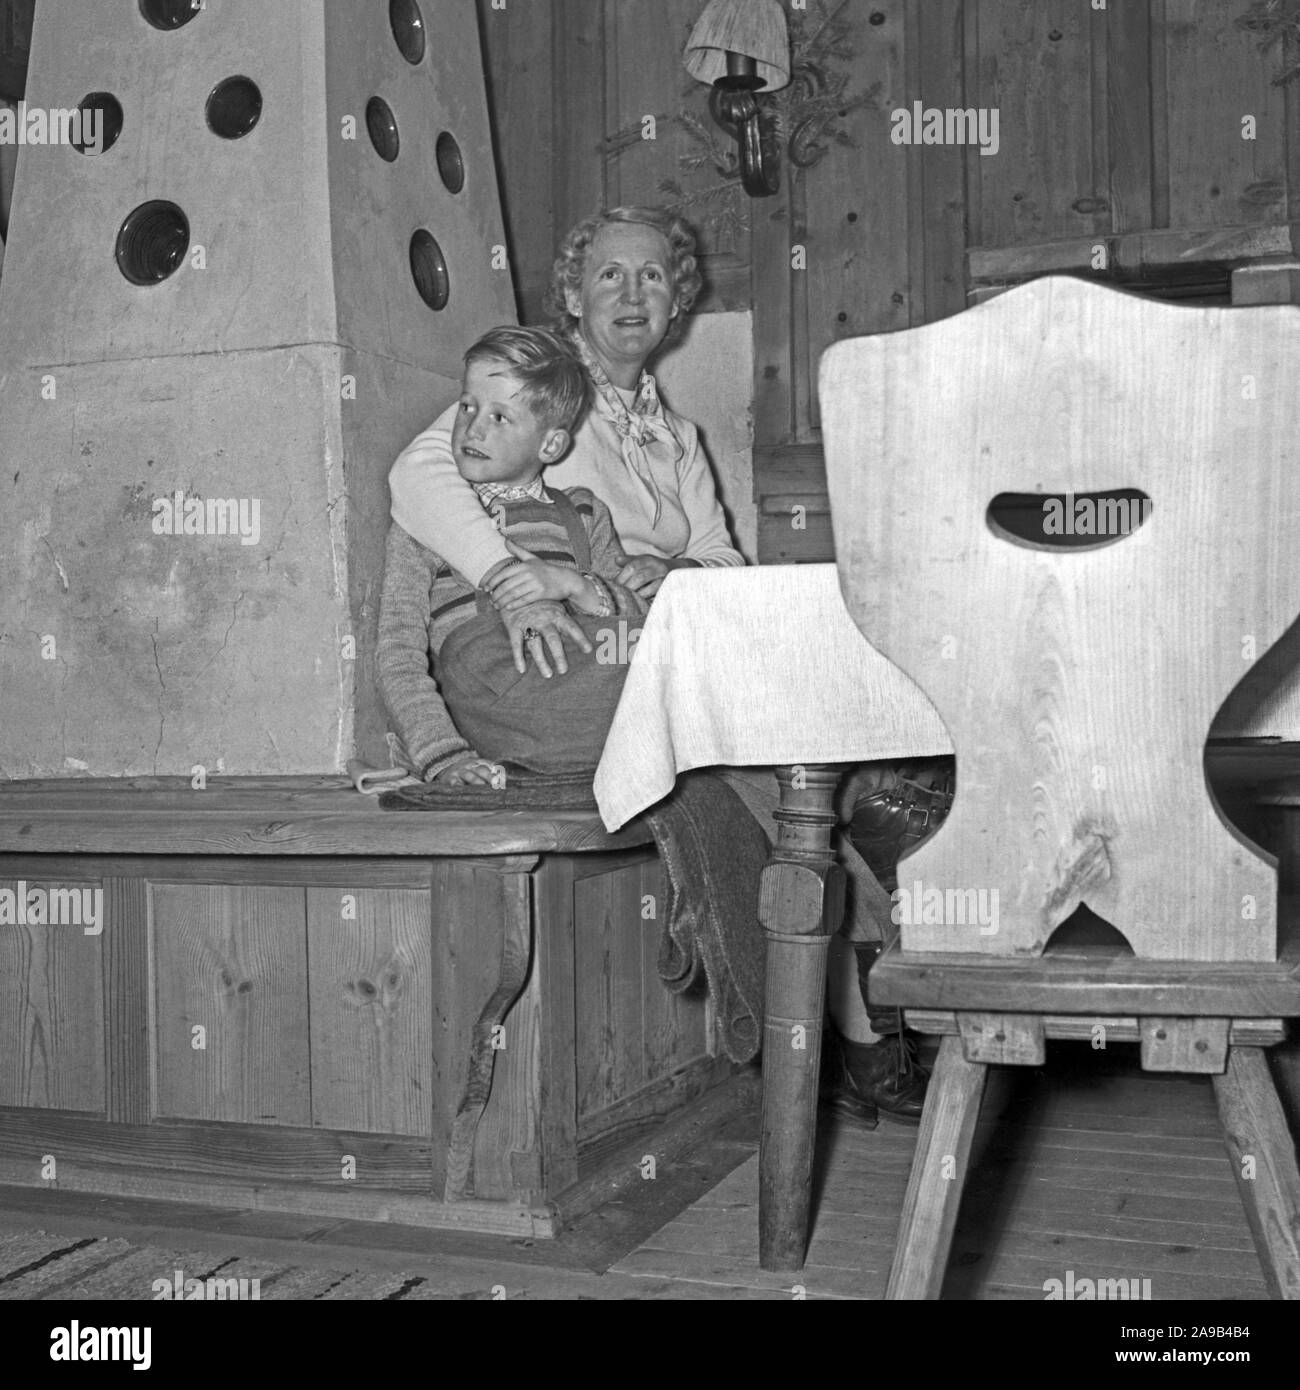 Madre e hijo sentado por la estufa en espera de la Navidad, Alemania 1955 Foto de stock